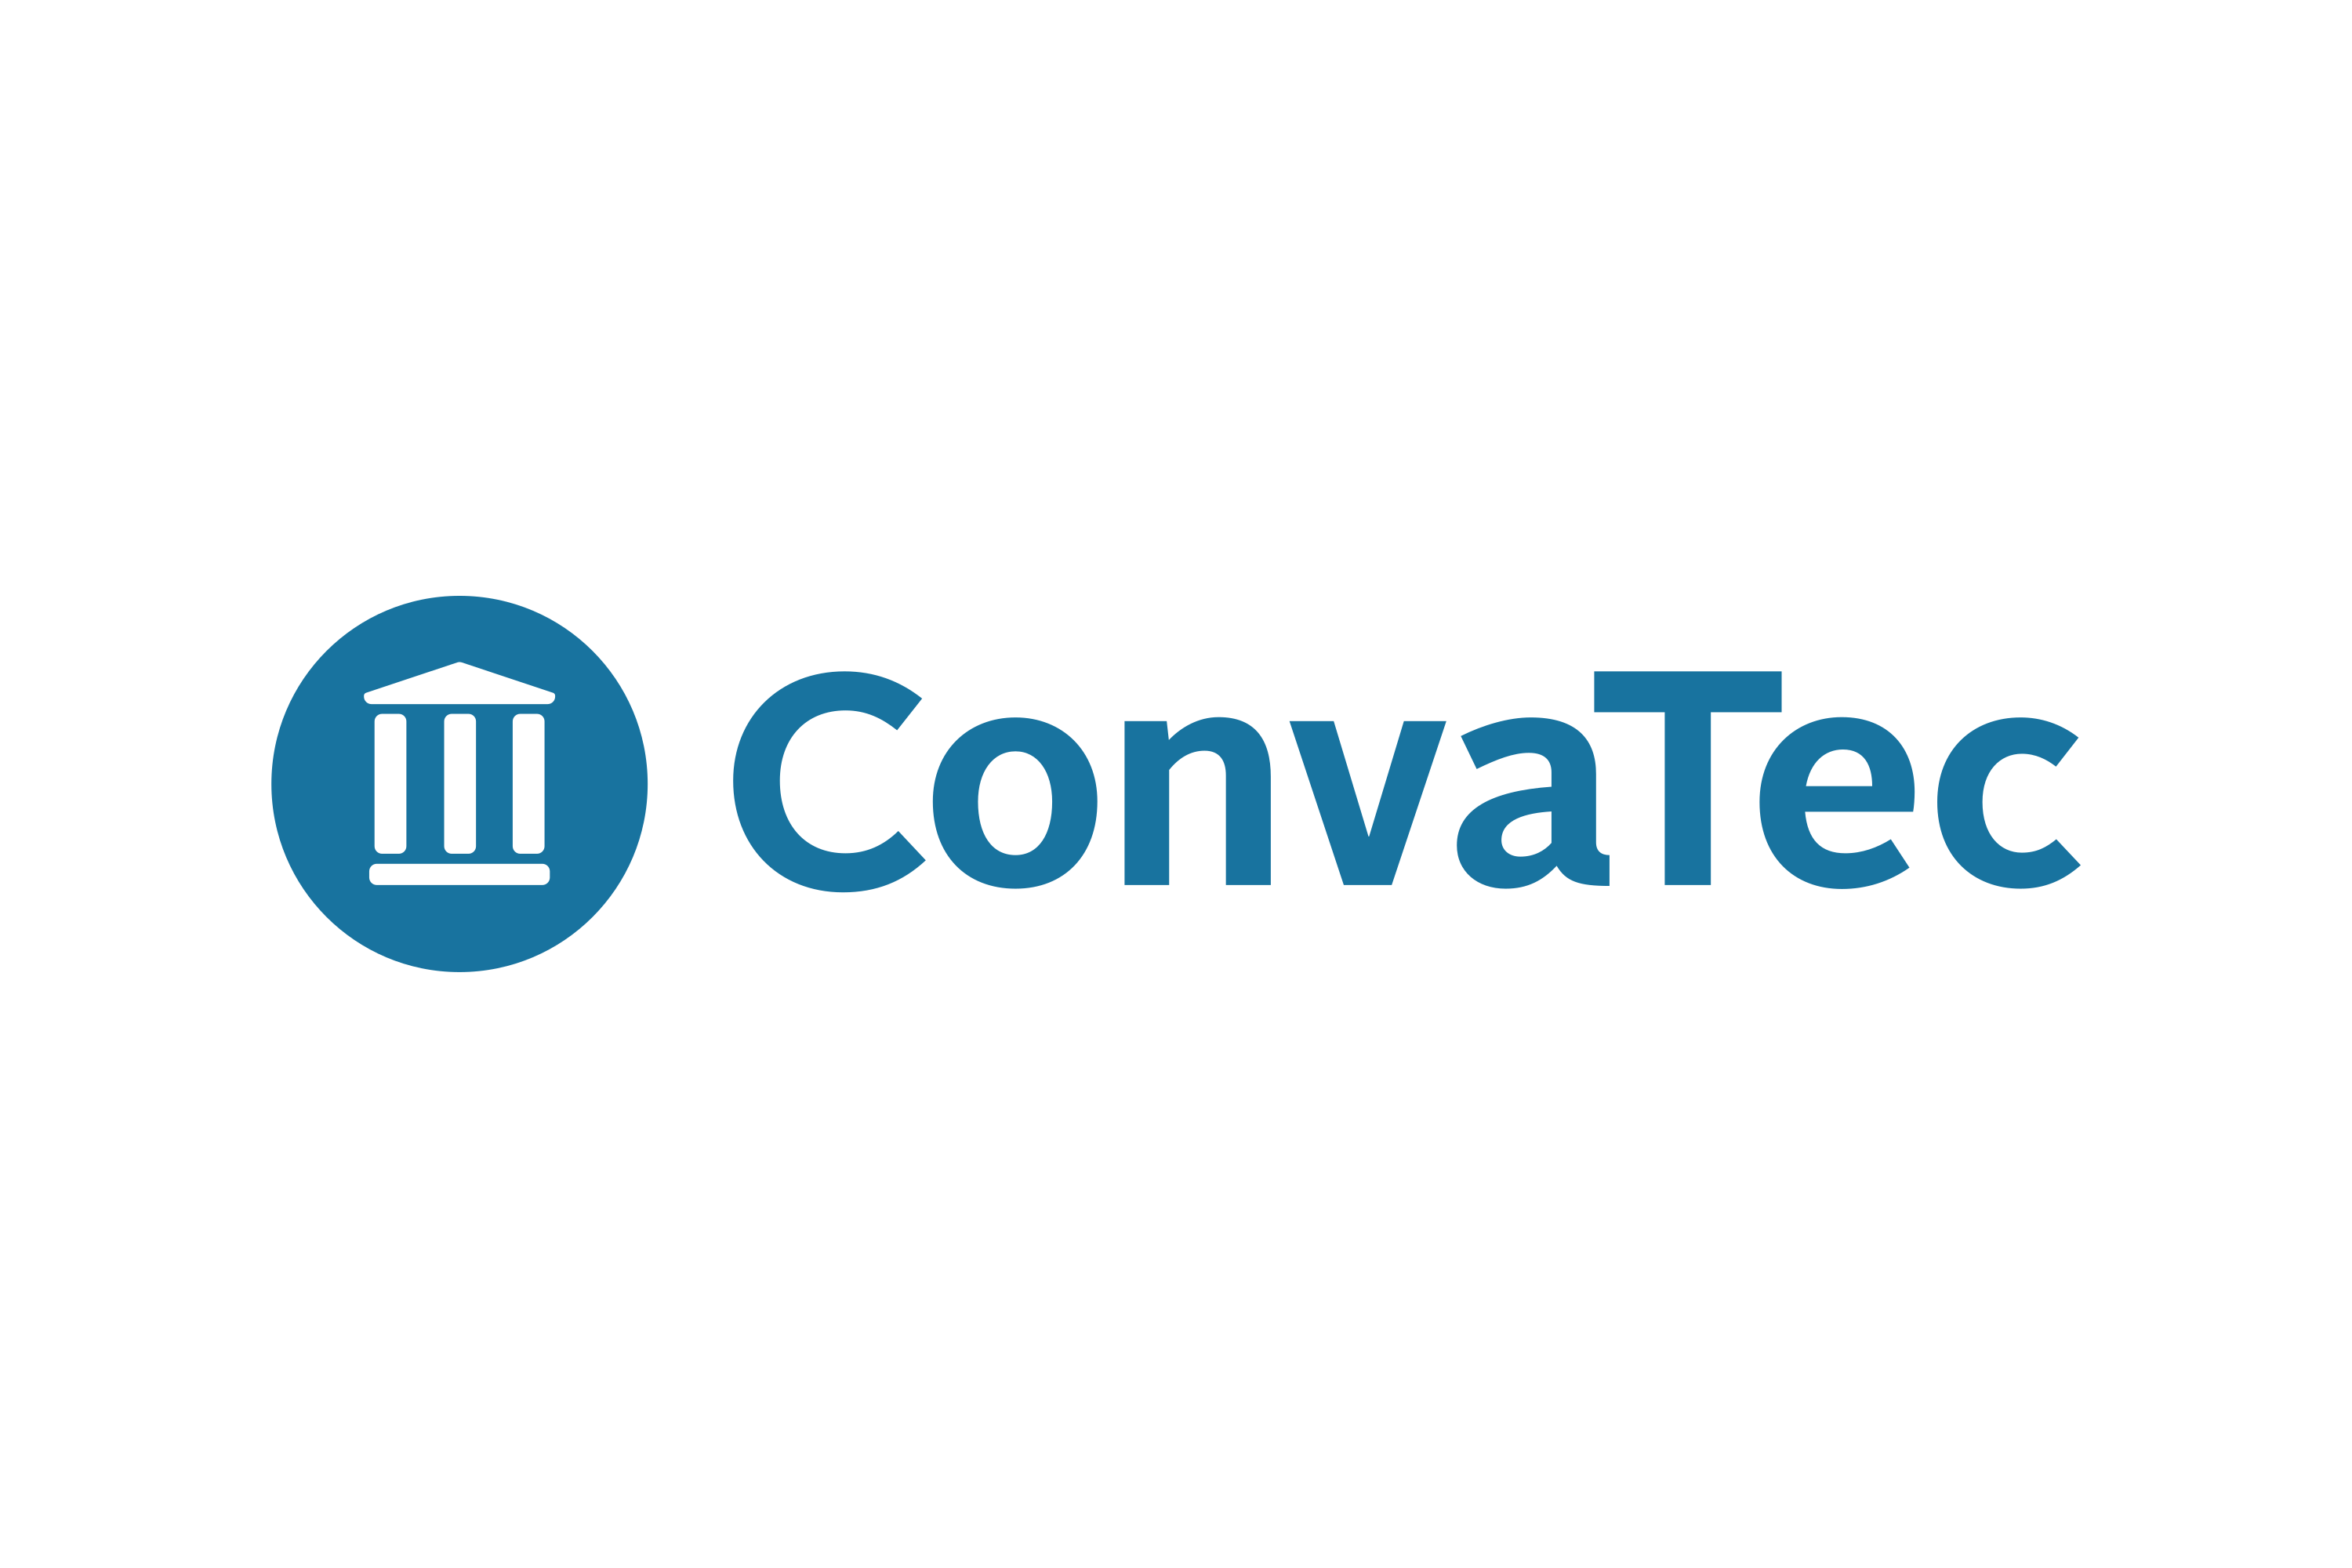 ConvaTec Logo